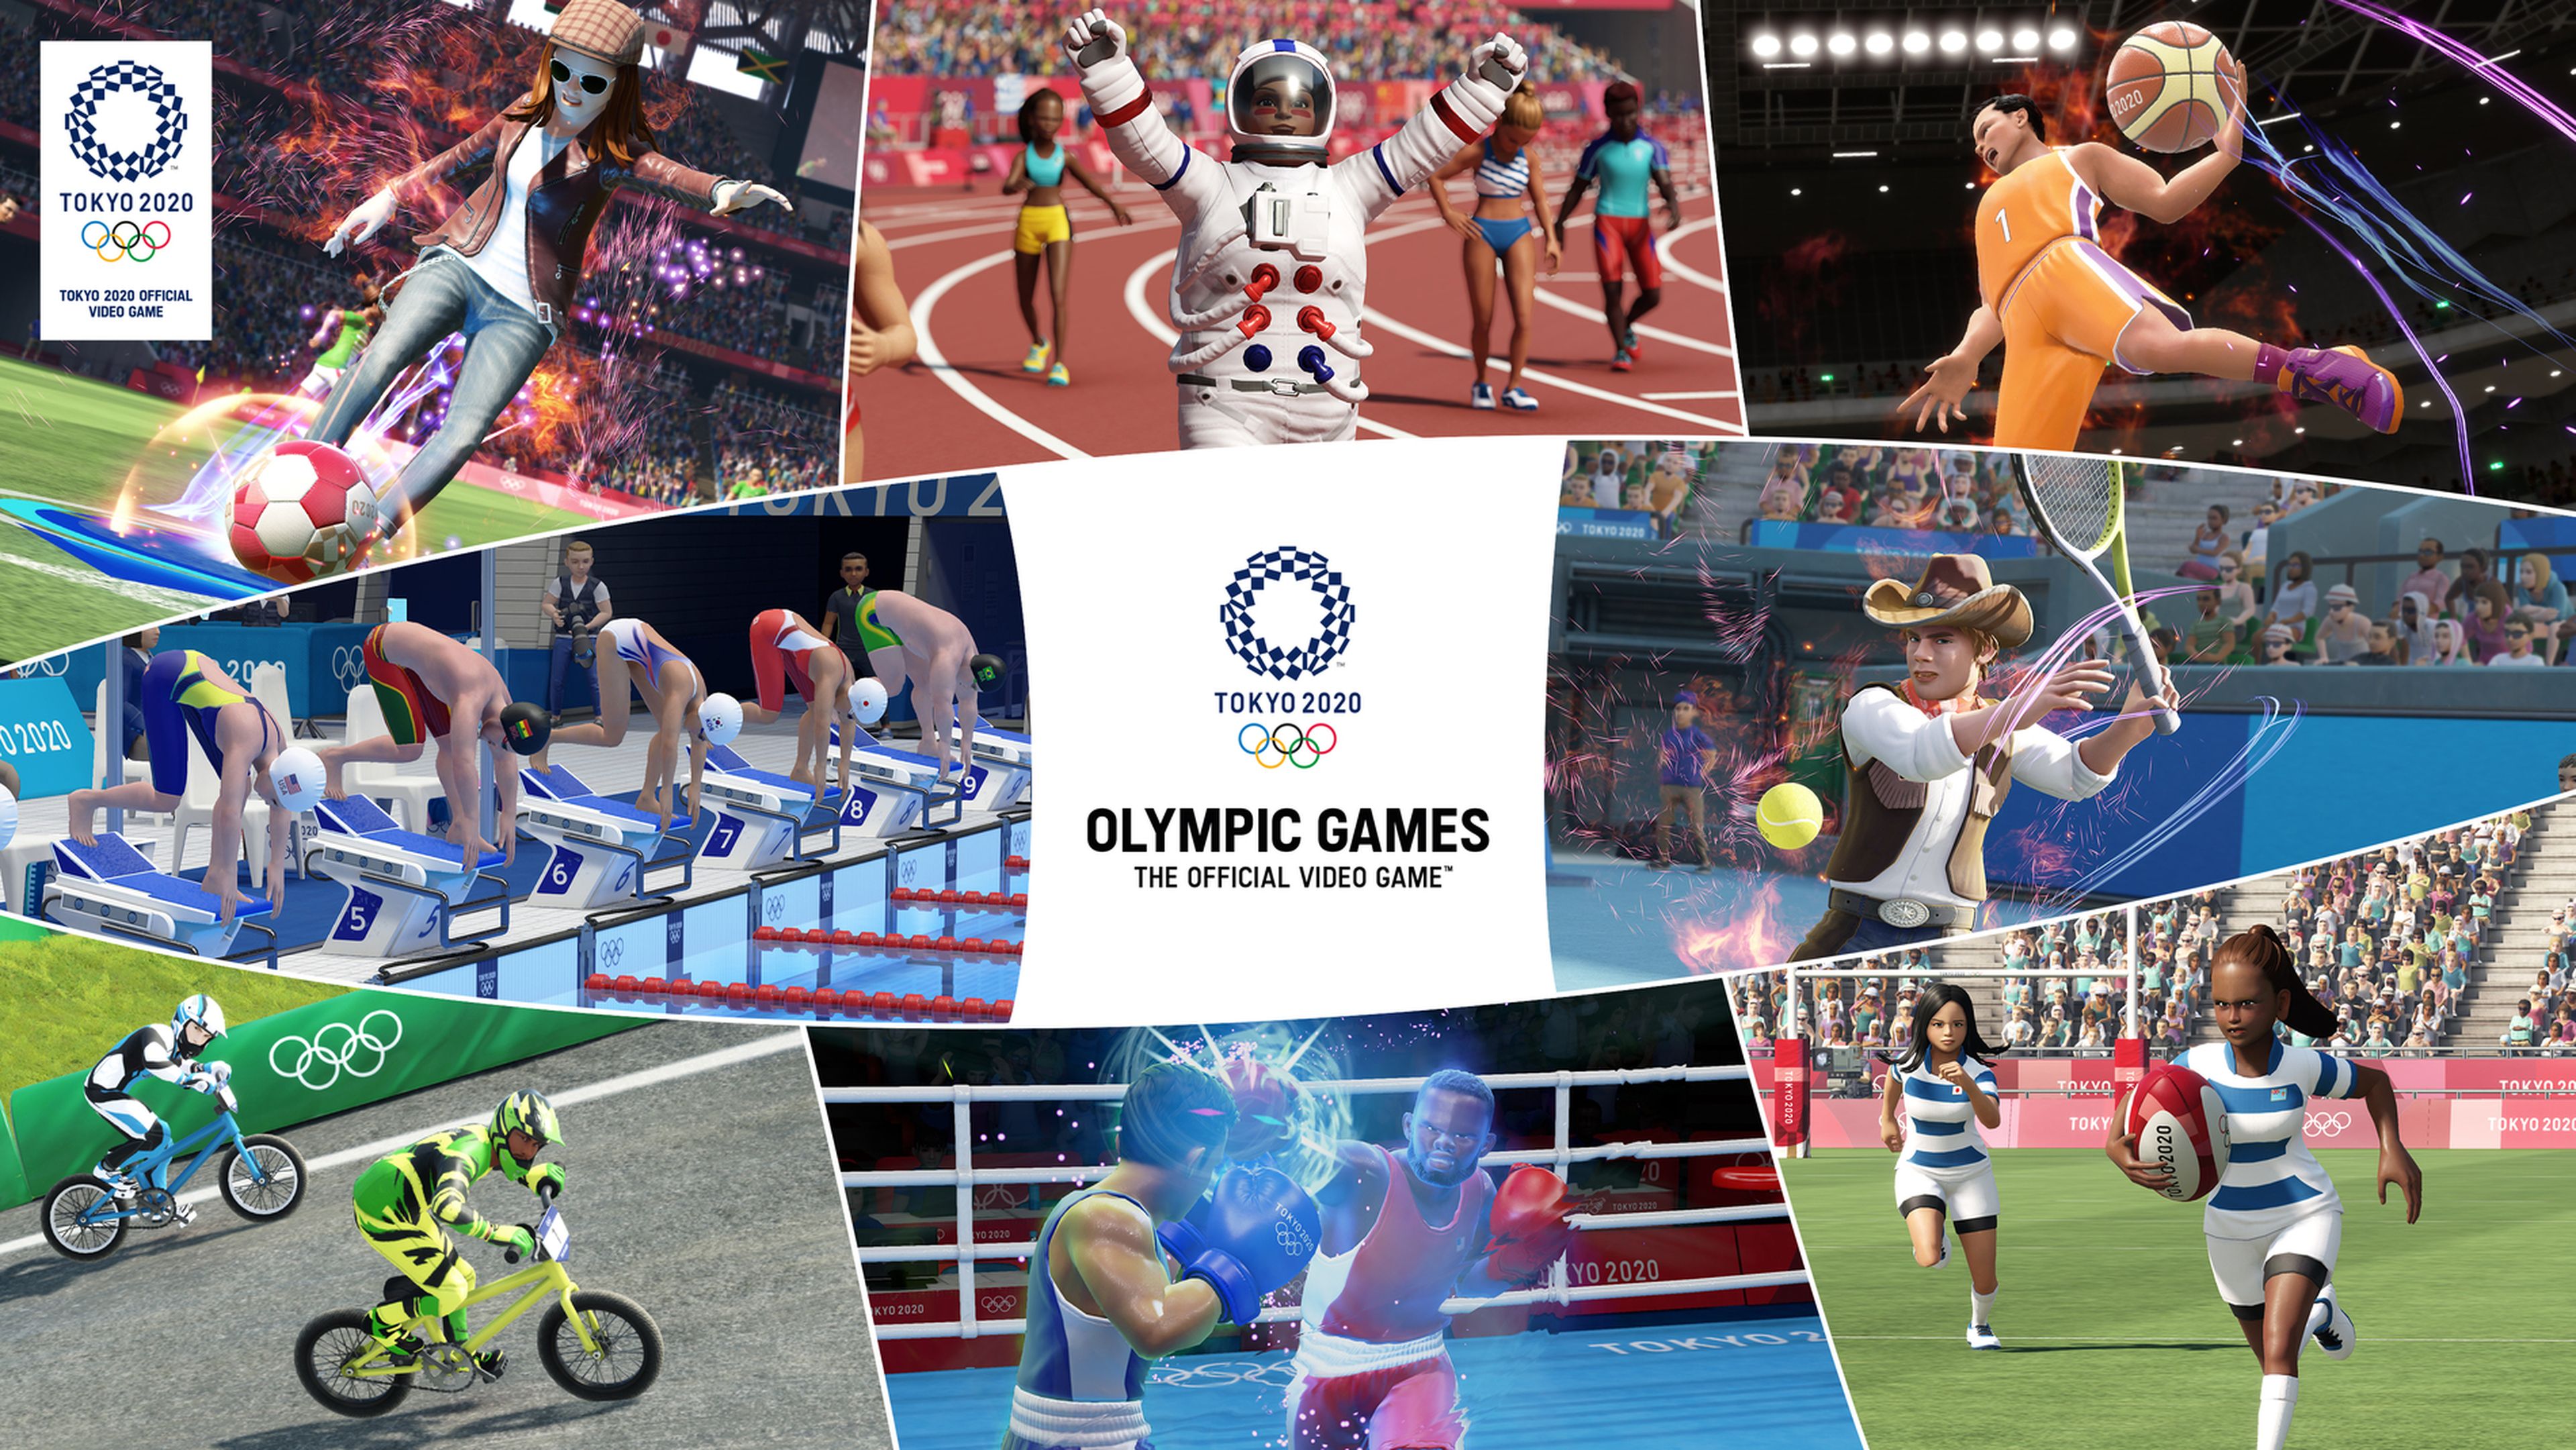 Juegos Olimpicos El Videojuego Oficial EMBARGO 18:00 DE HOY